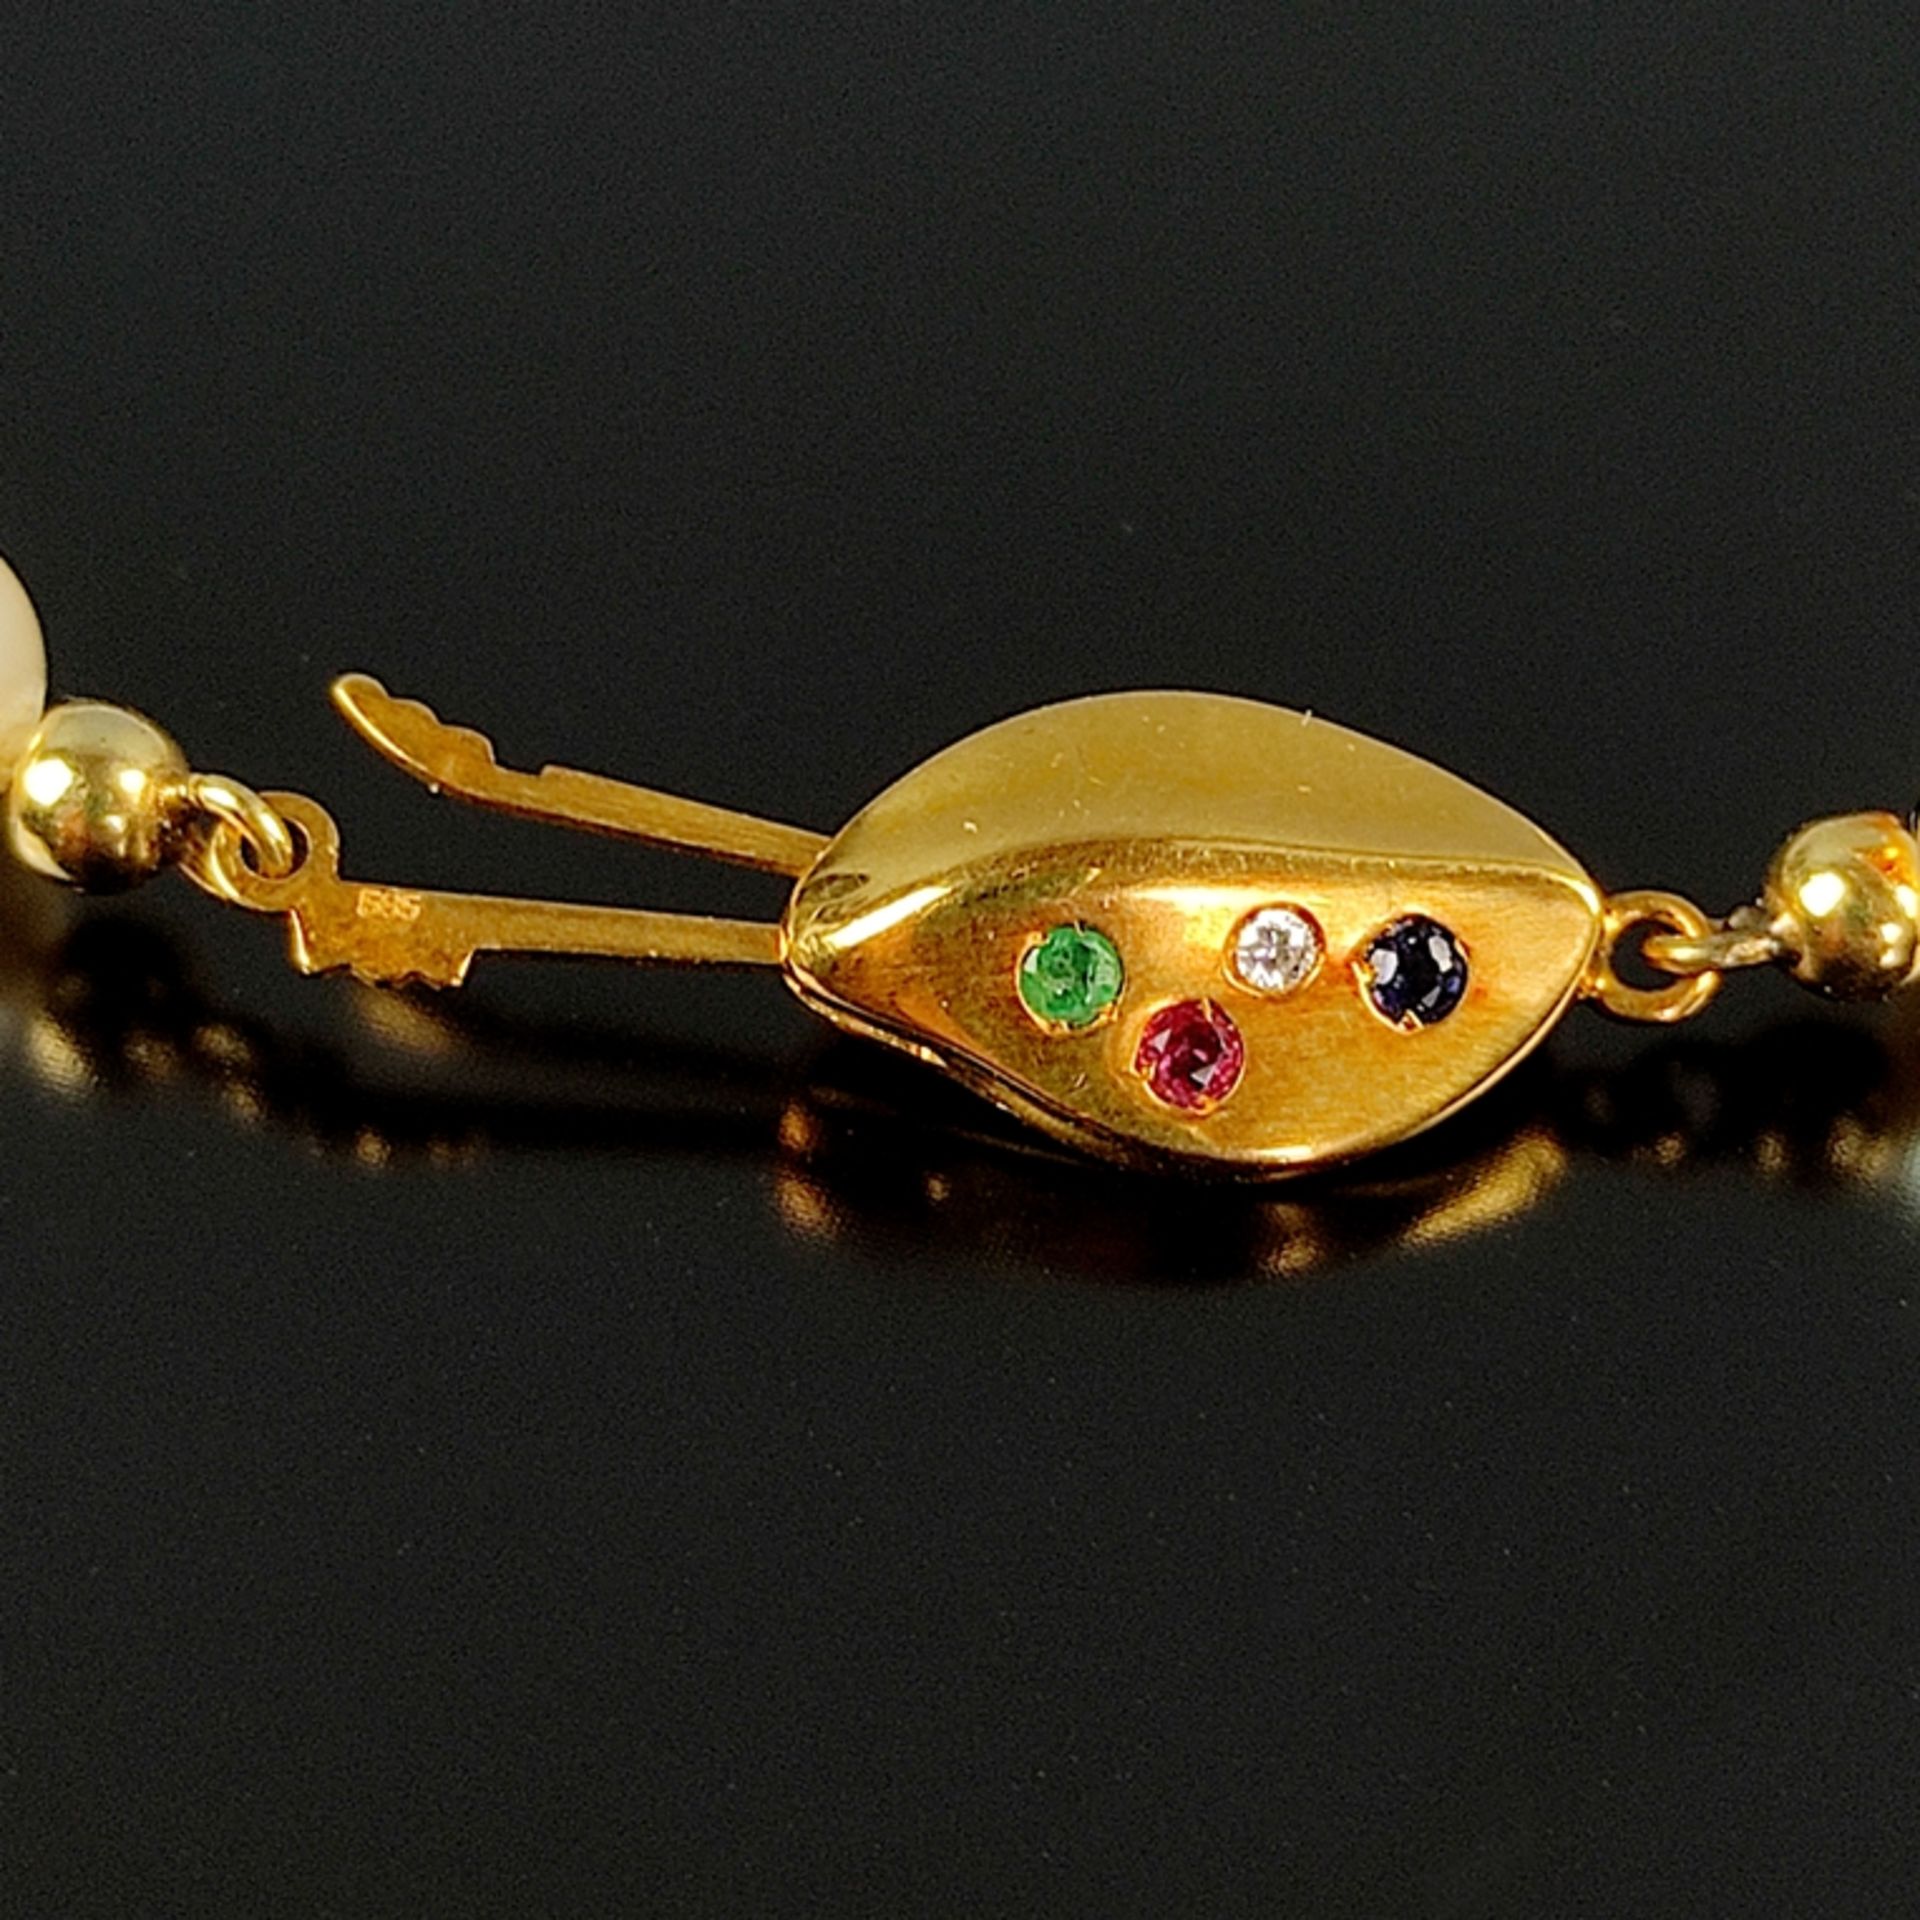 Feine Perlenkette, 585/14K Gelbgold, Gesamtgewicht 26,7g, feine Akoya-Zuchtperlen in weißem Lüster, - Bild 2 aus 3